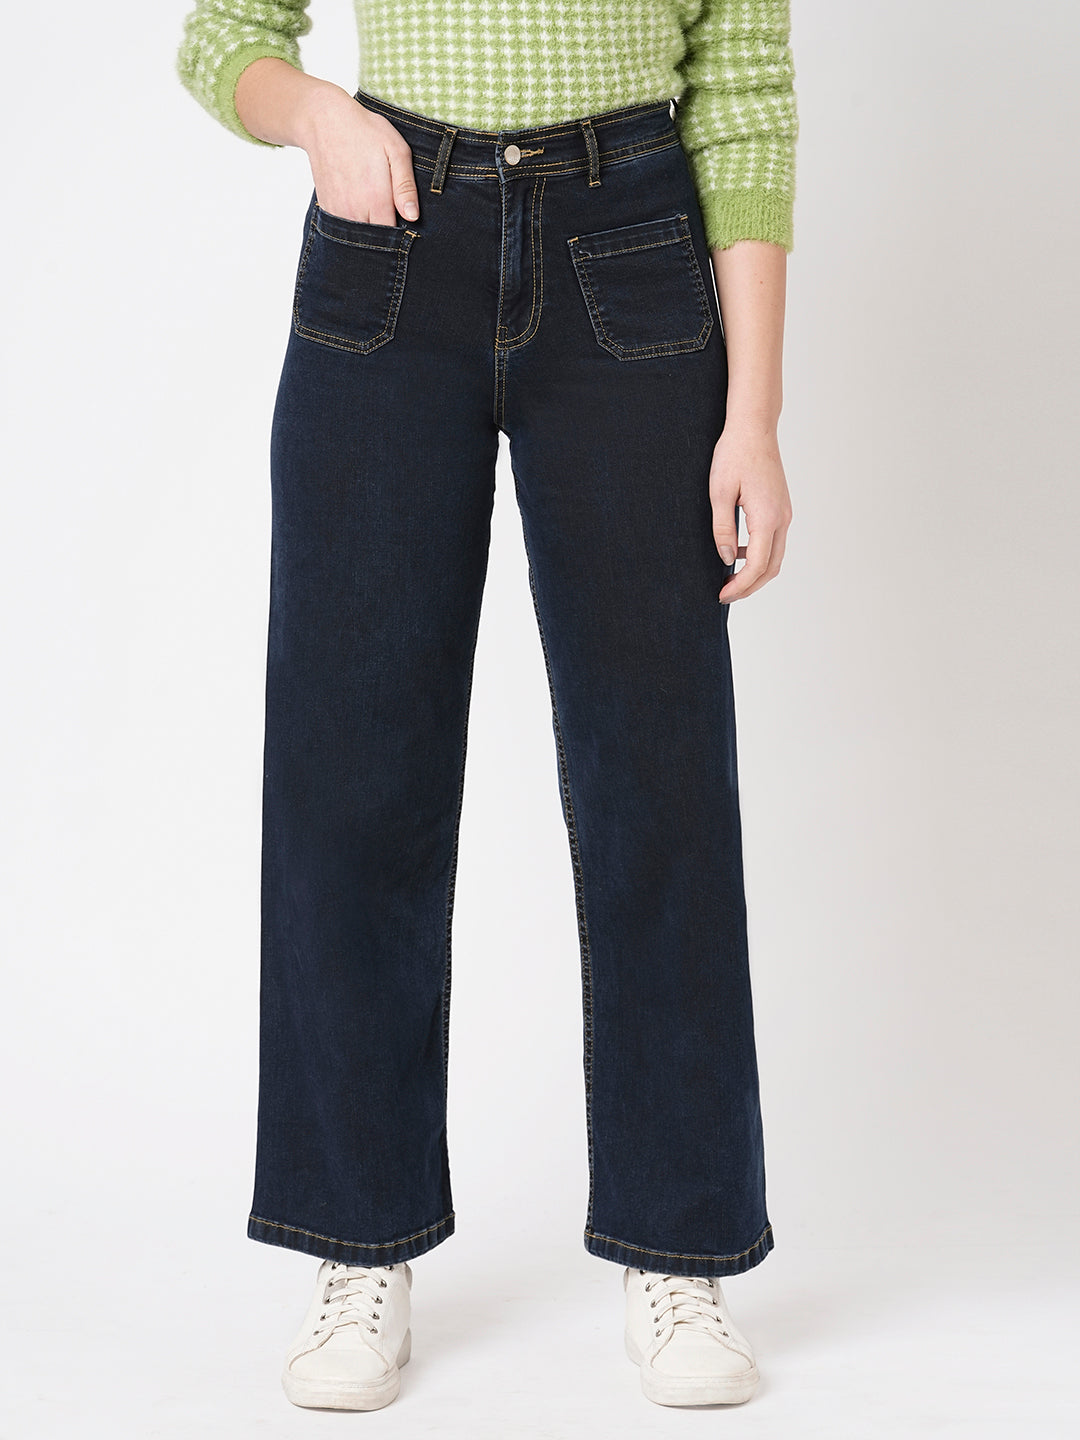 Buy KRAUS Black High Rise Blended Fabric Regular Fit Women's Jeans